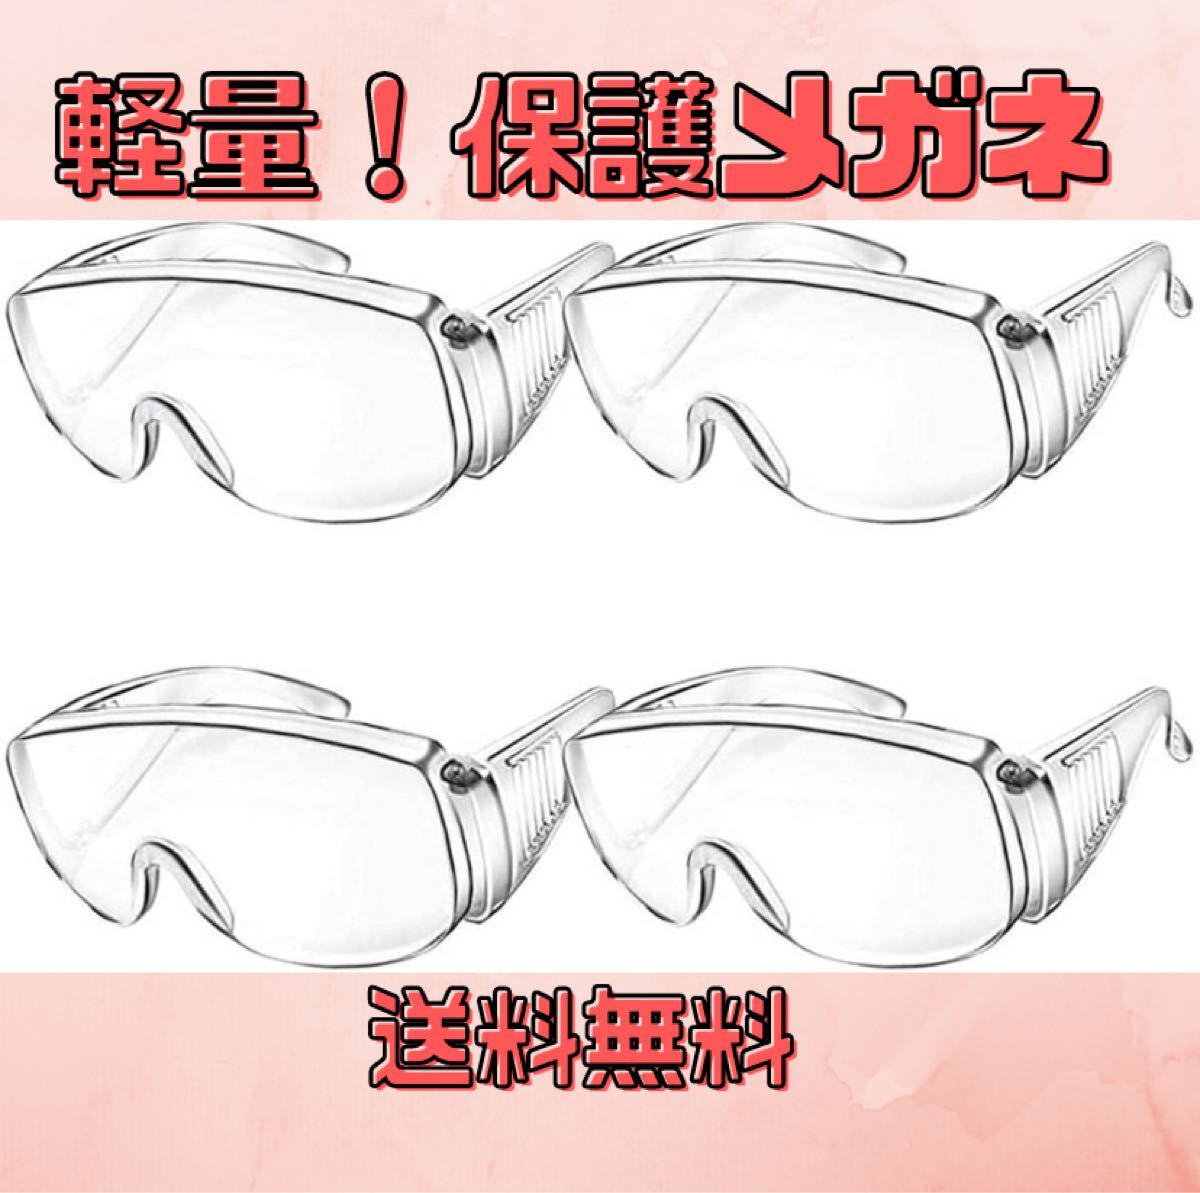 【訳あり】ゴーグル 保護メガネ 防護 安全 防塵 DIY メーカー 4個セット